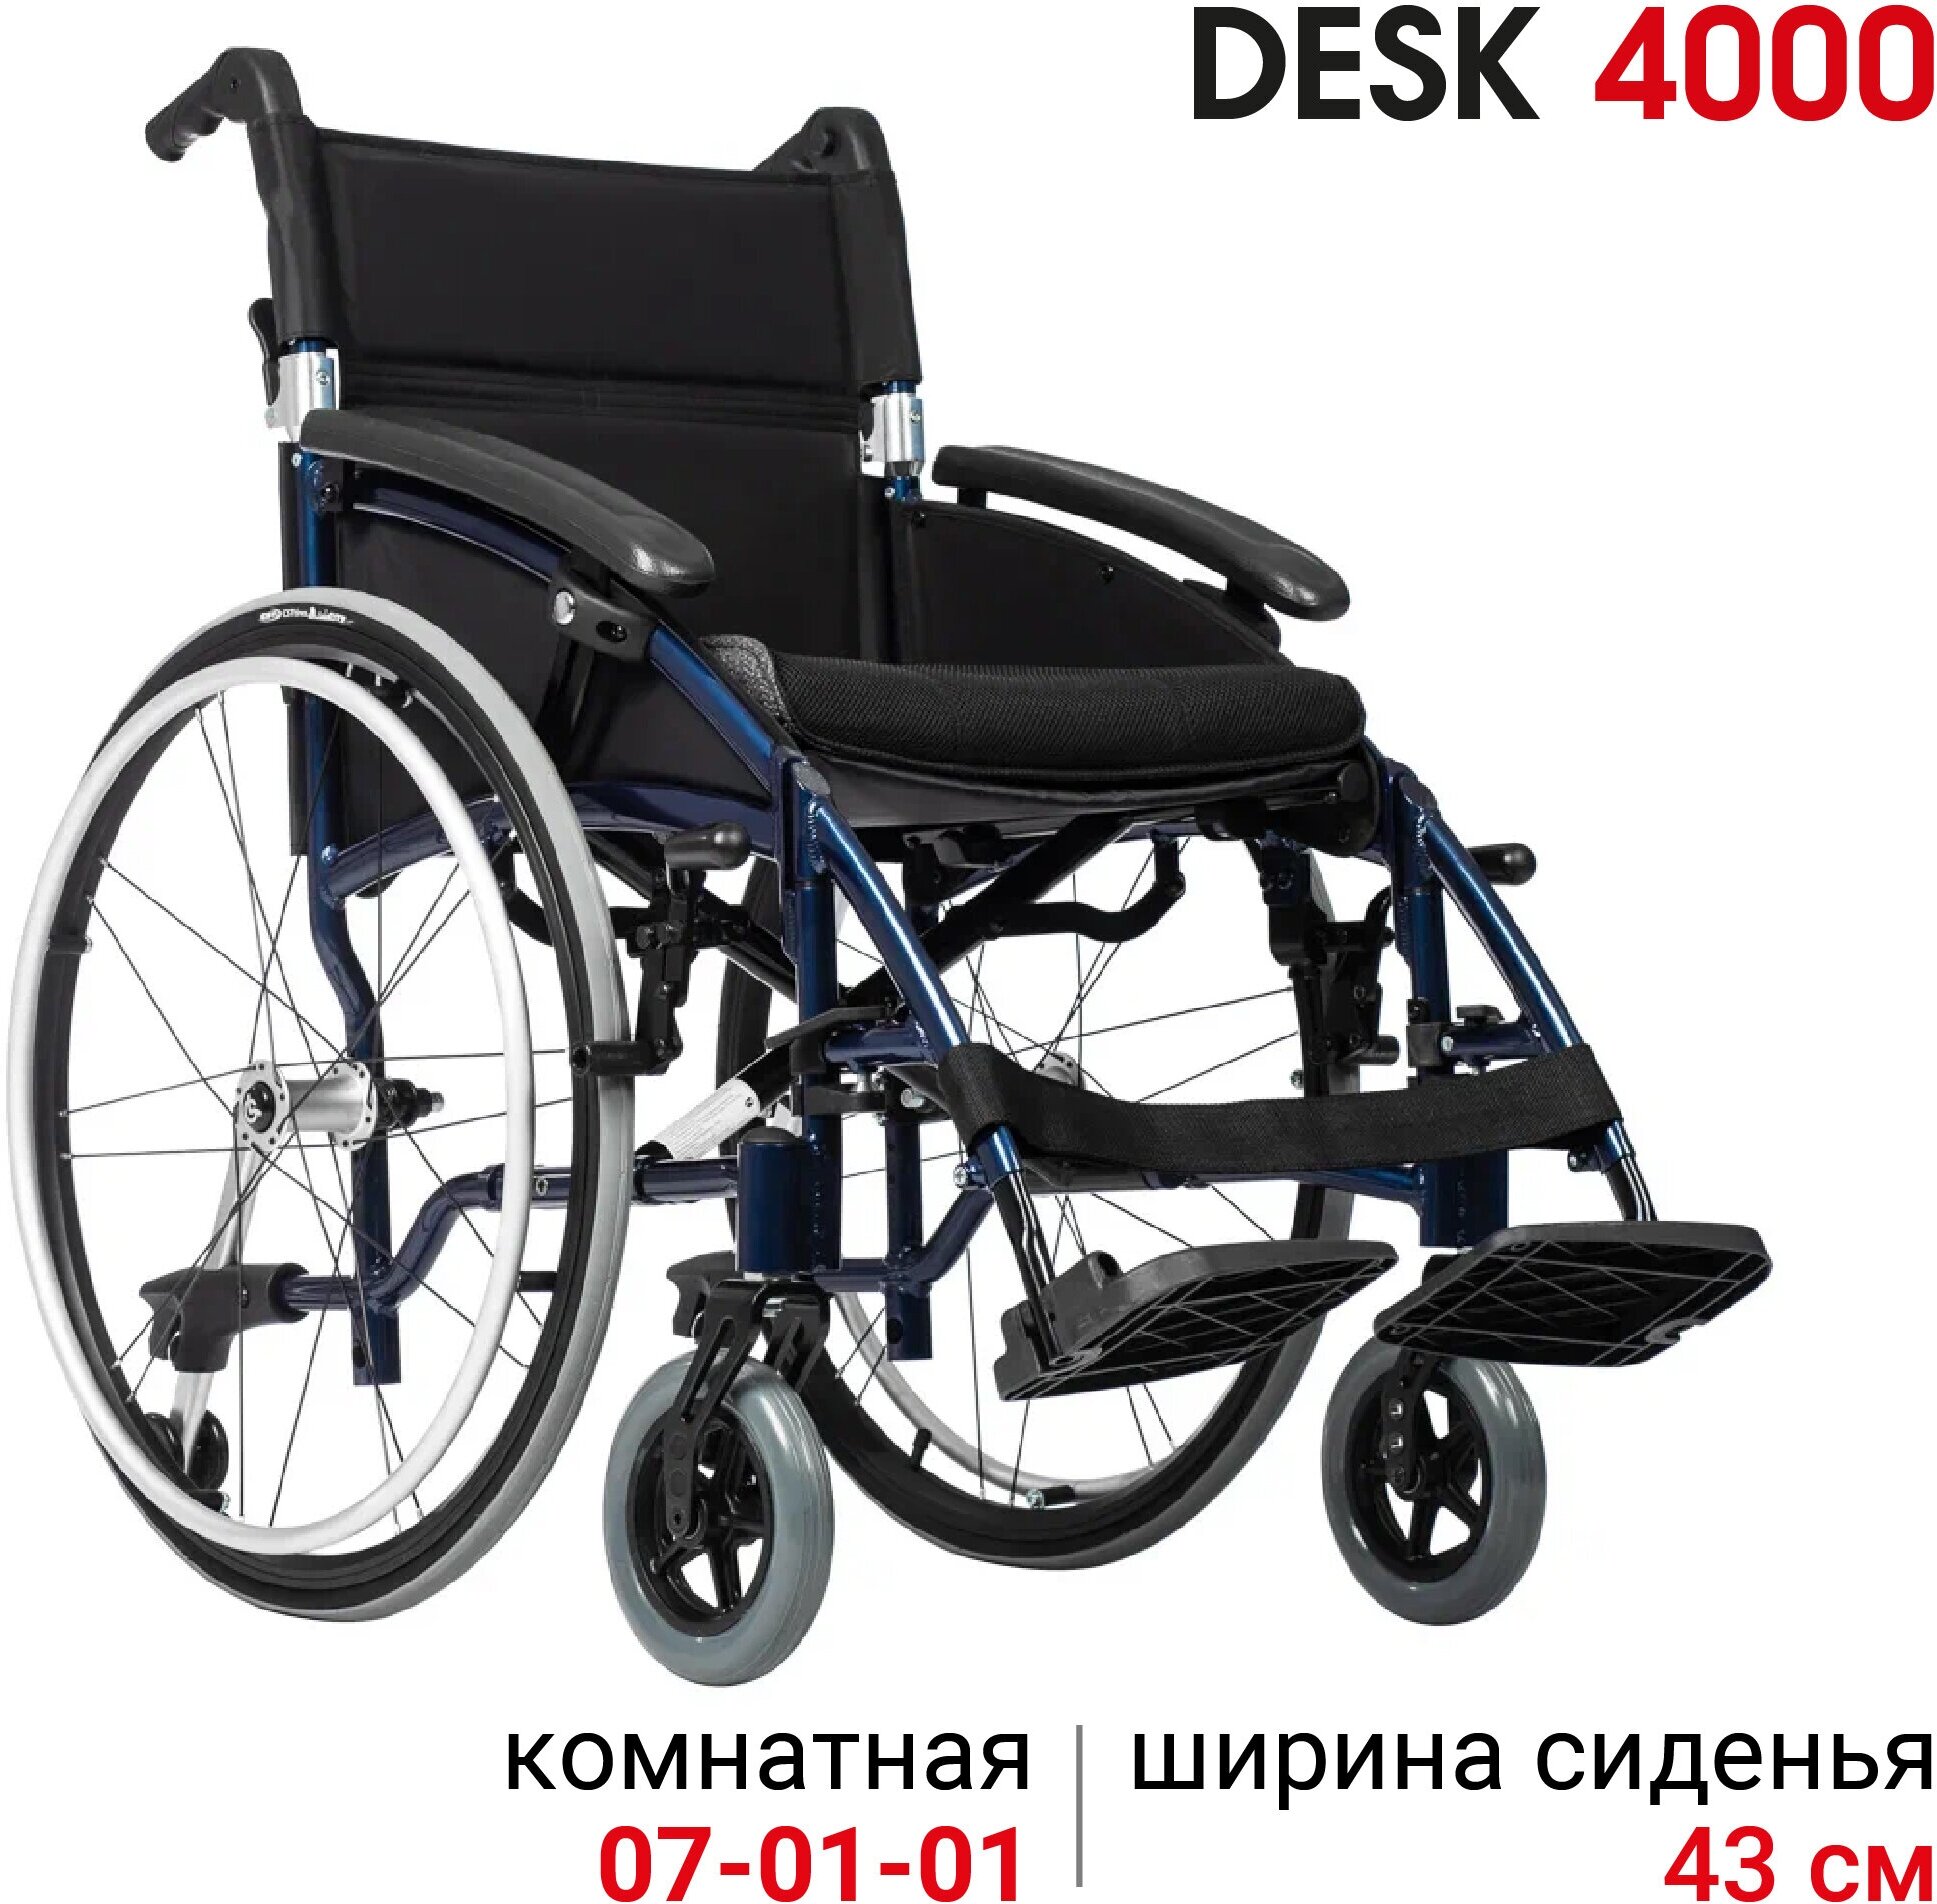 Кресло-коляска Ortonica Base 185/ Desk 4000 43UU алюминиевая с противопролежневой подушкой ширина сиденья 43 см литые колеса